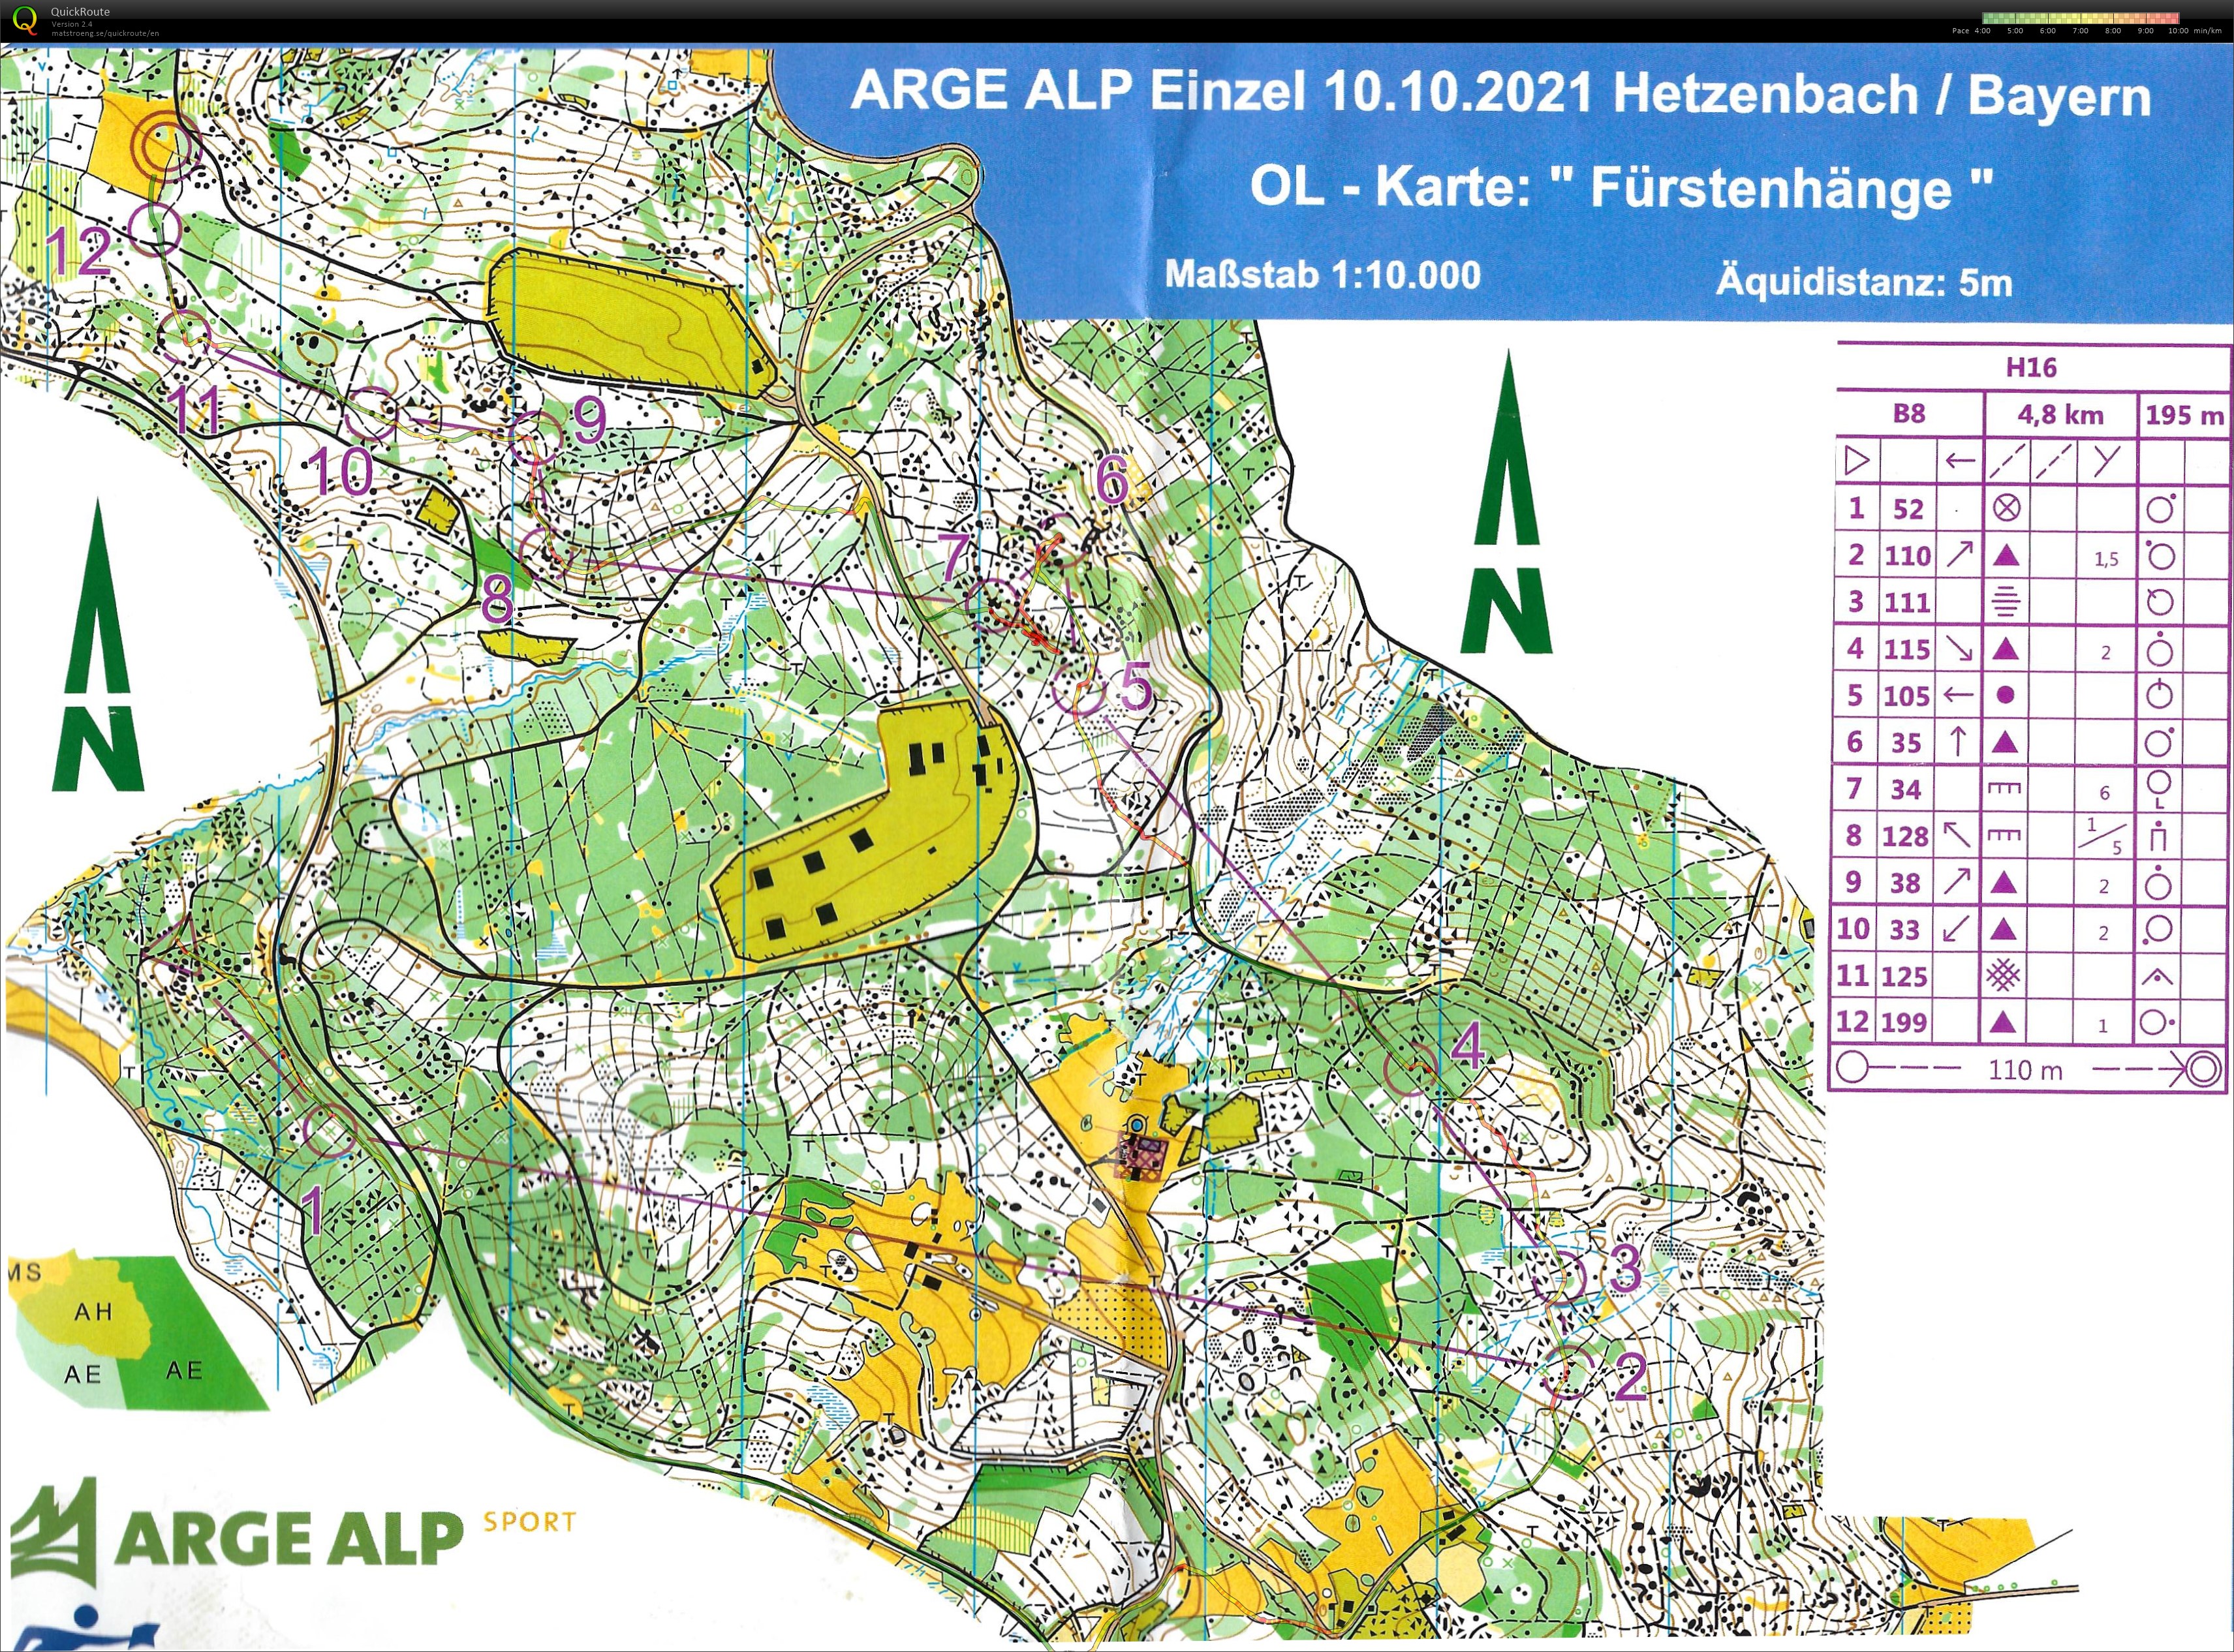 Arge Alp 2021 Regensburg Einzel (10/10/2021)